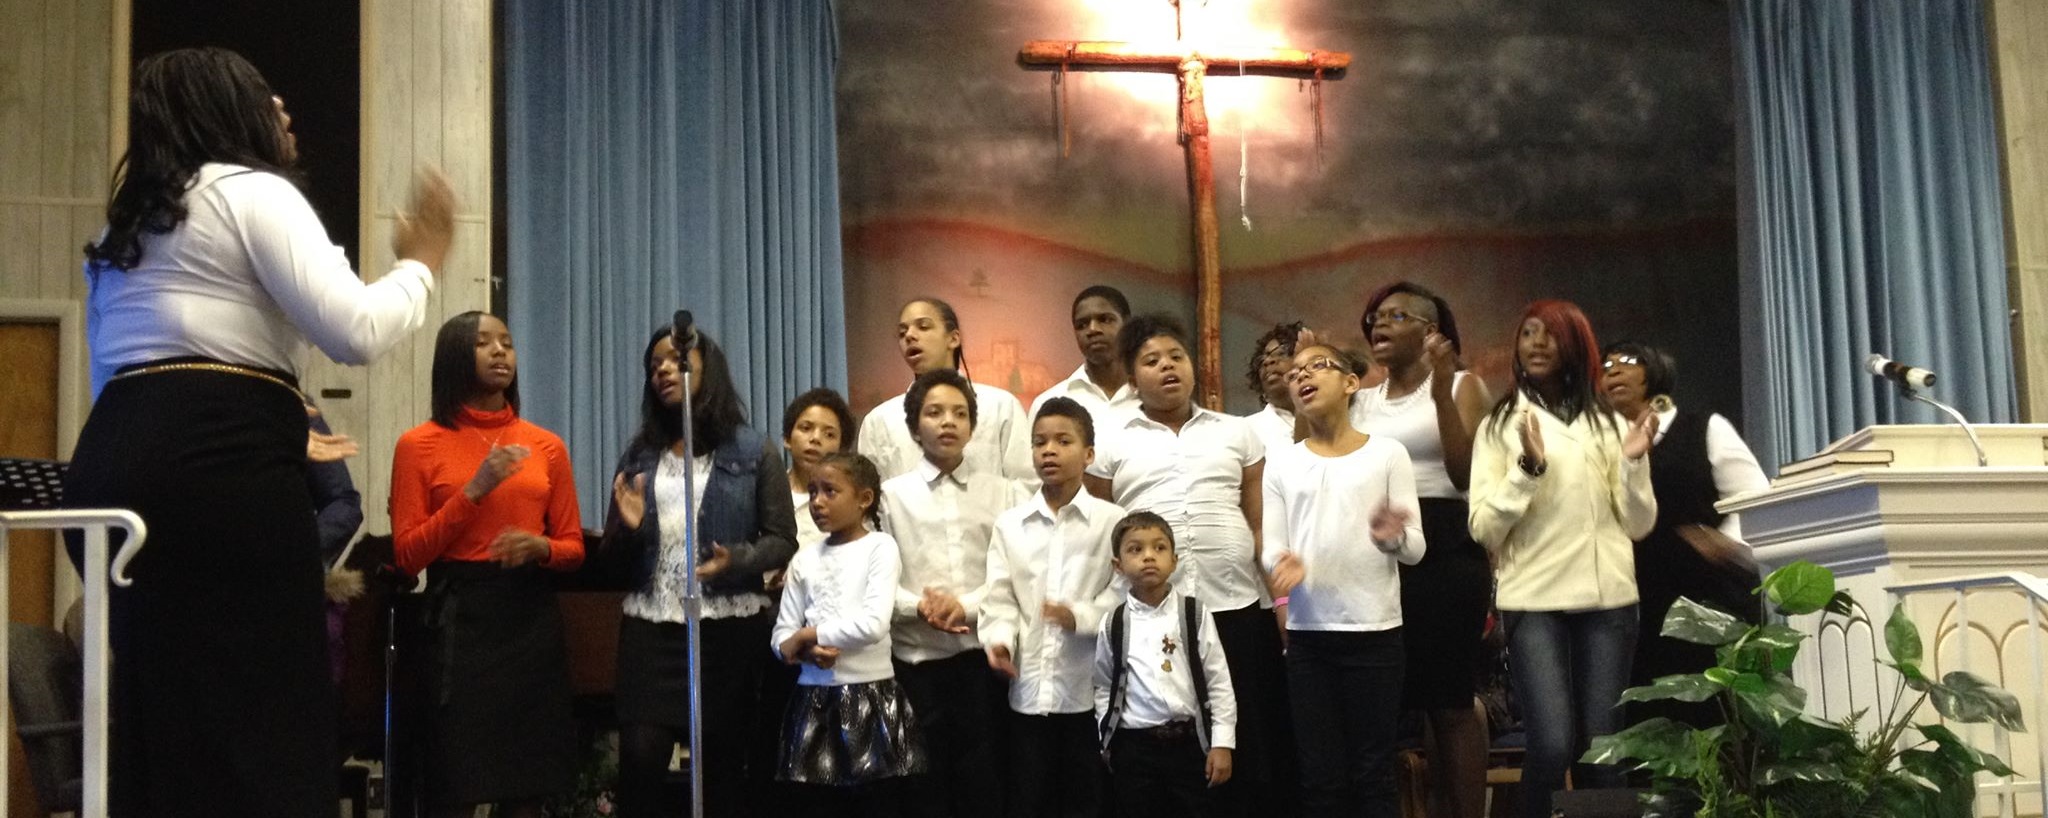 St. Paul Youth Choir